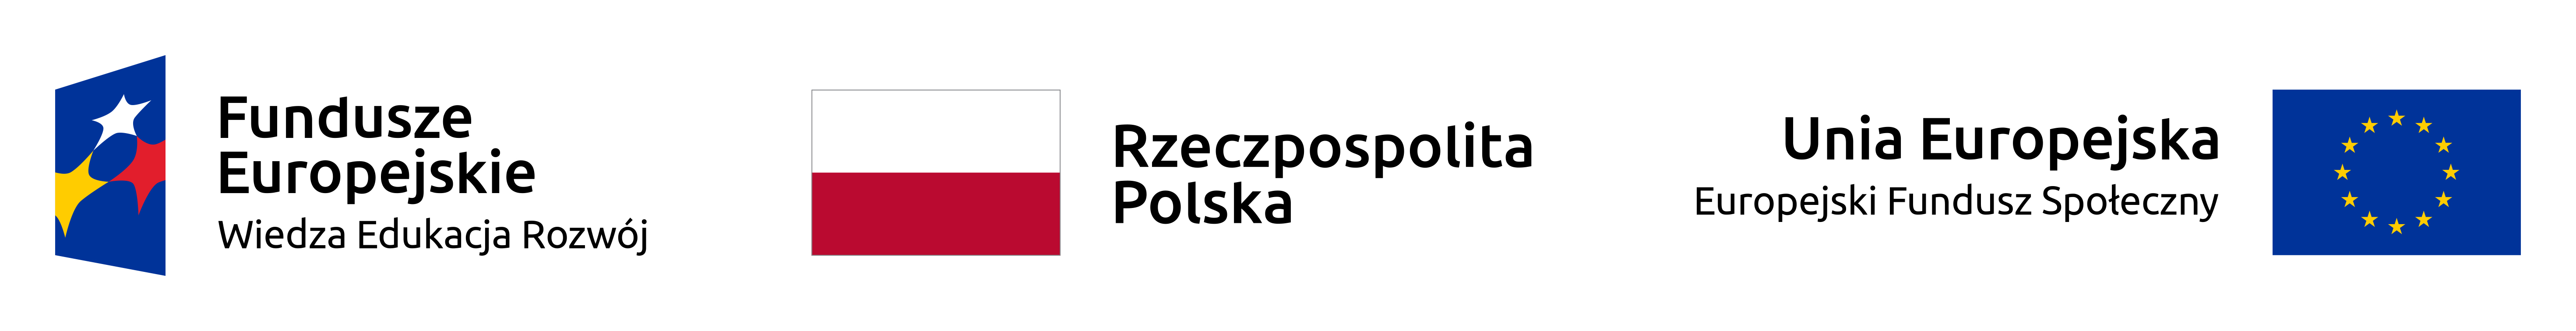 znak graficzny Funduszy Europejskich Wiedza Edukacja Rozwój, flaga Polski i Unii Europejskiej Europejski Fundusz Społeczny